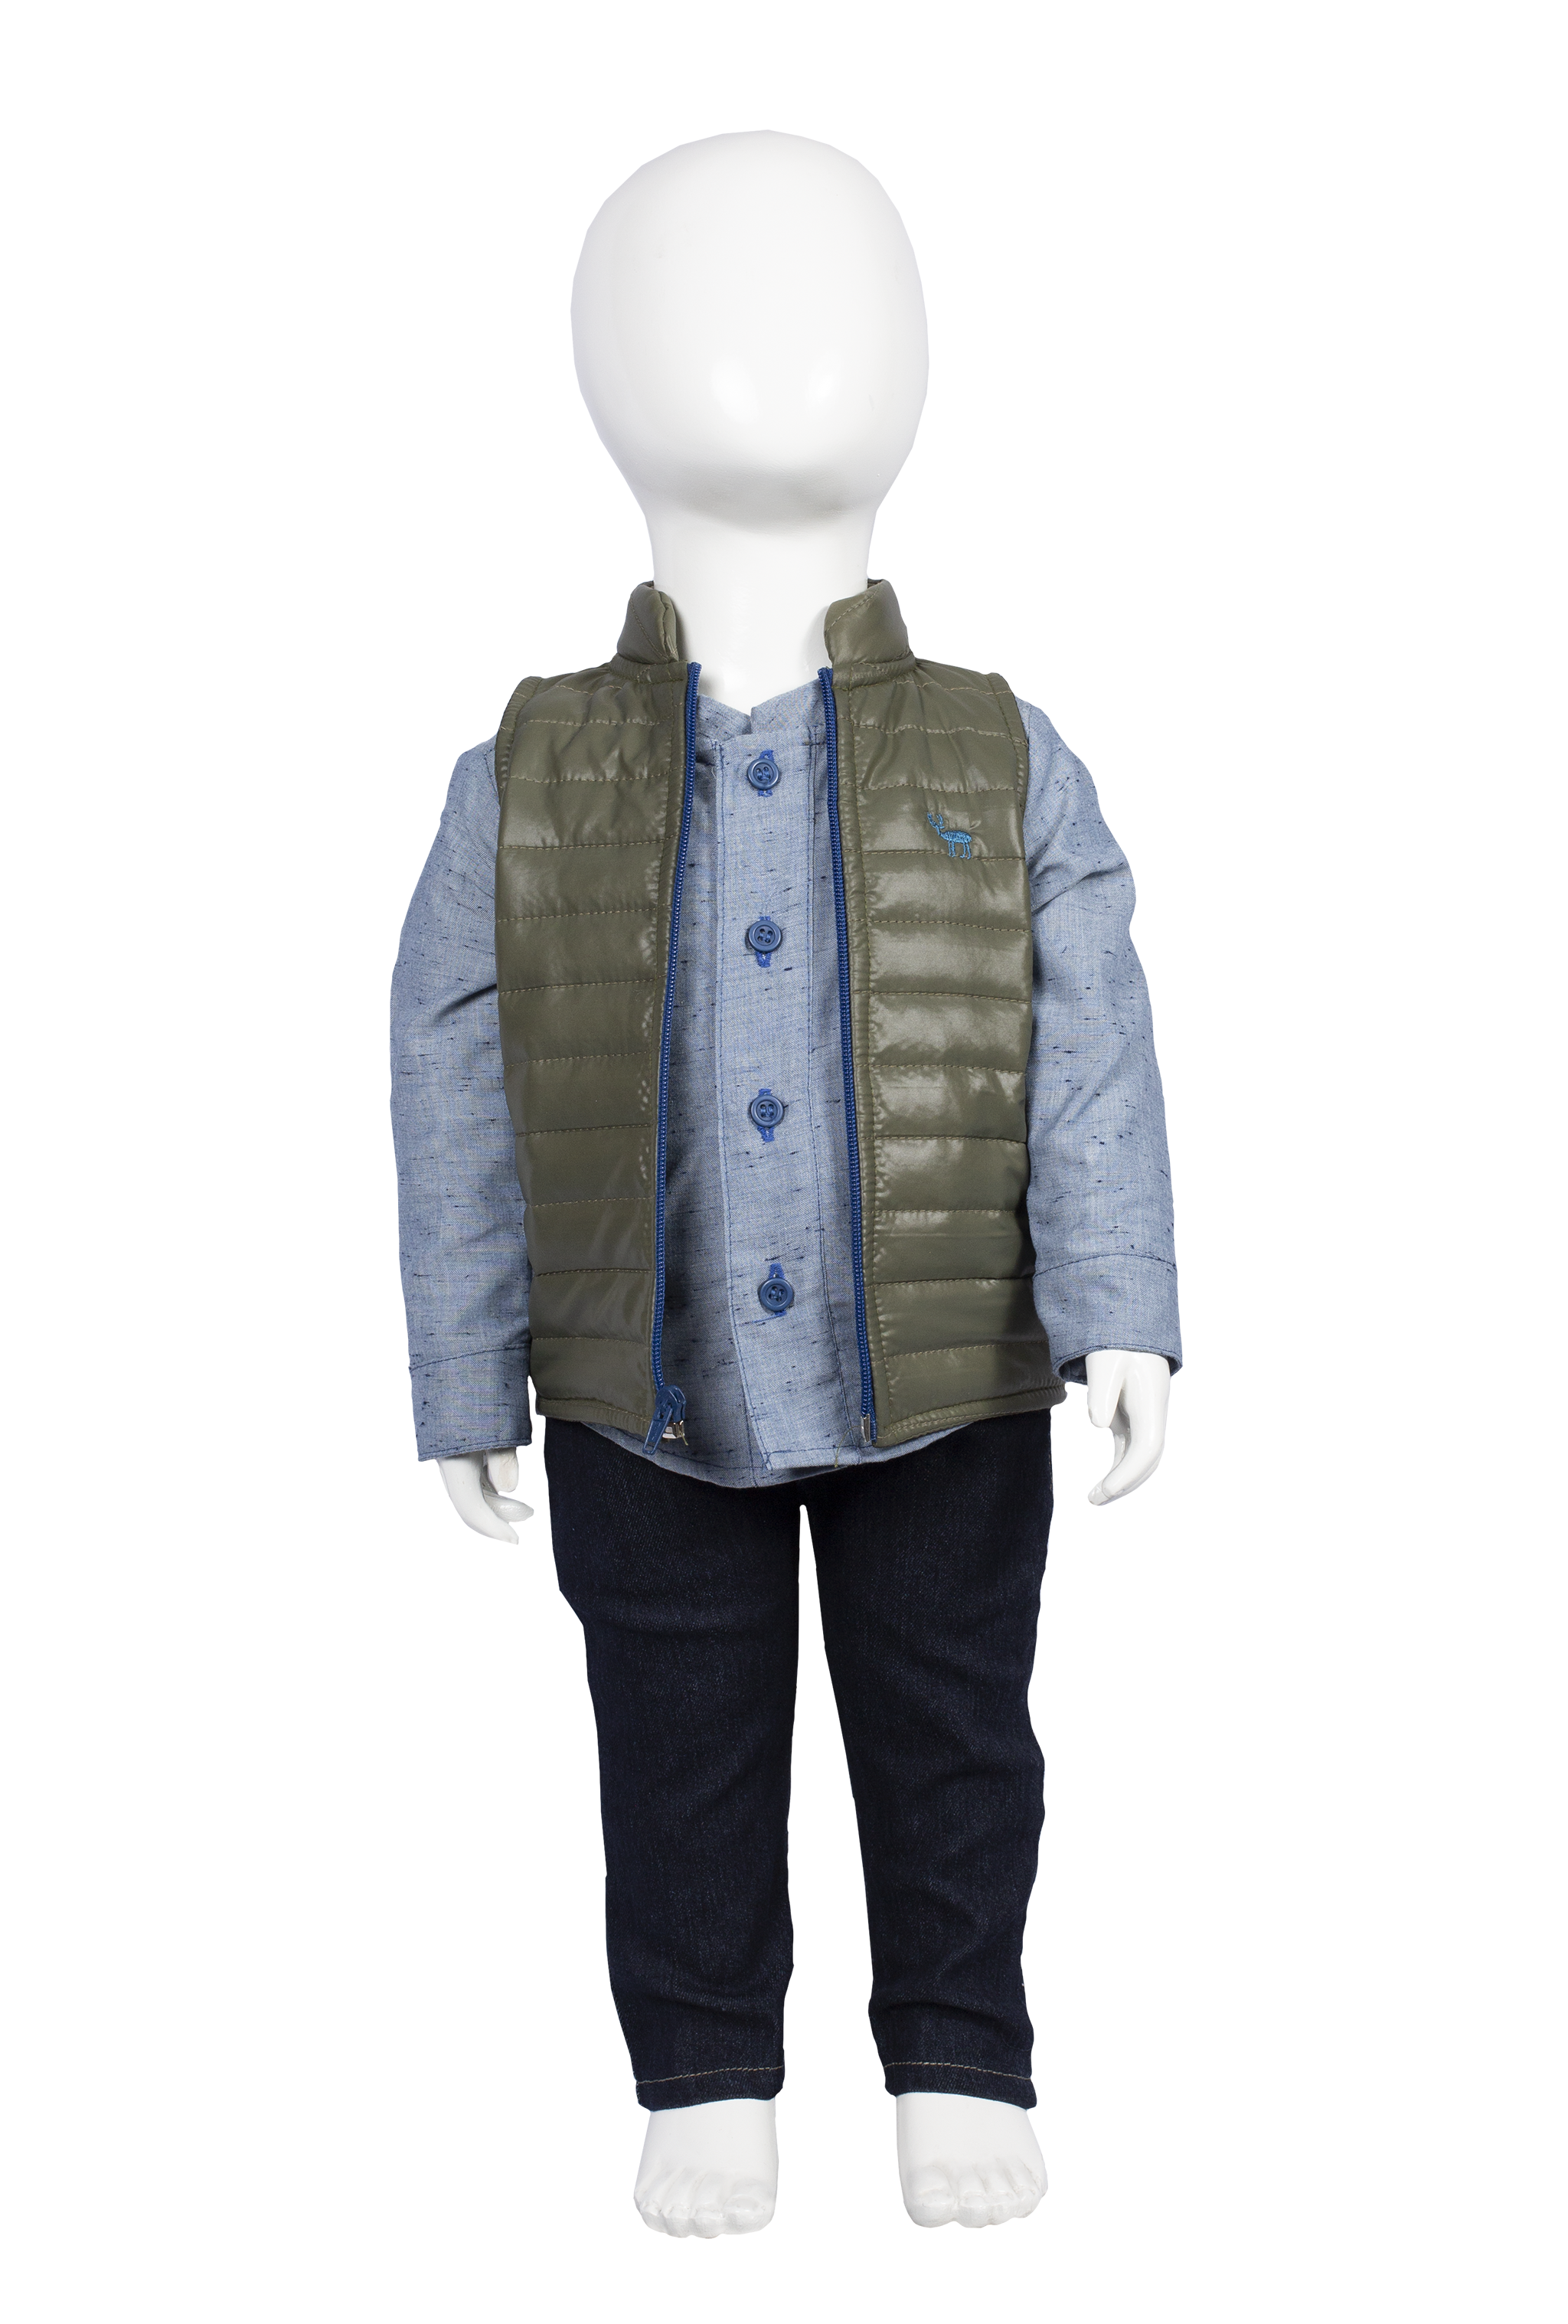 Conjunto de Chaleco , camisa y jeans Modelo # 5011